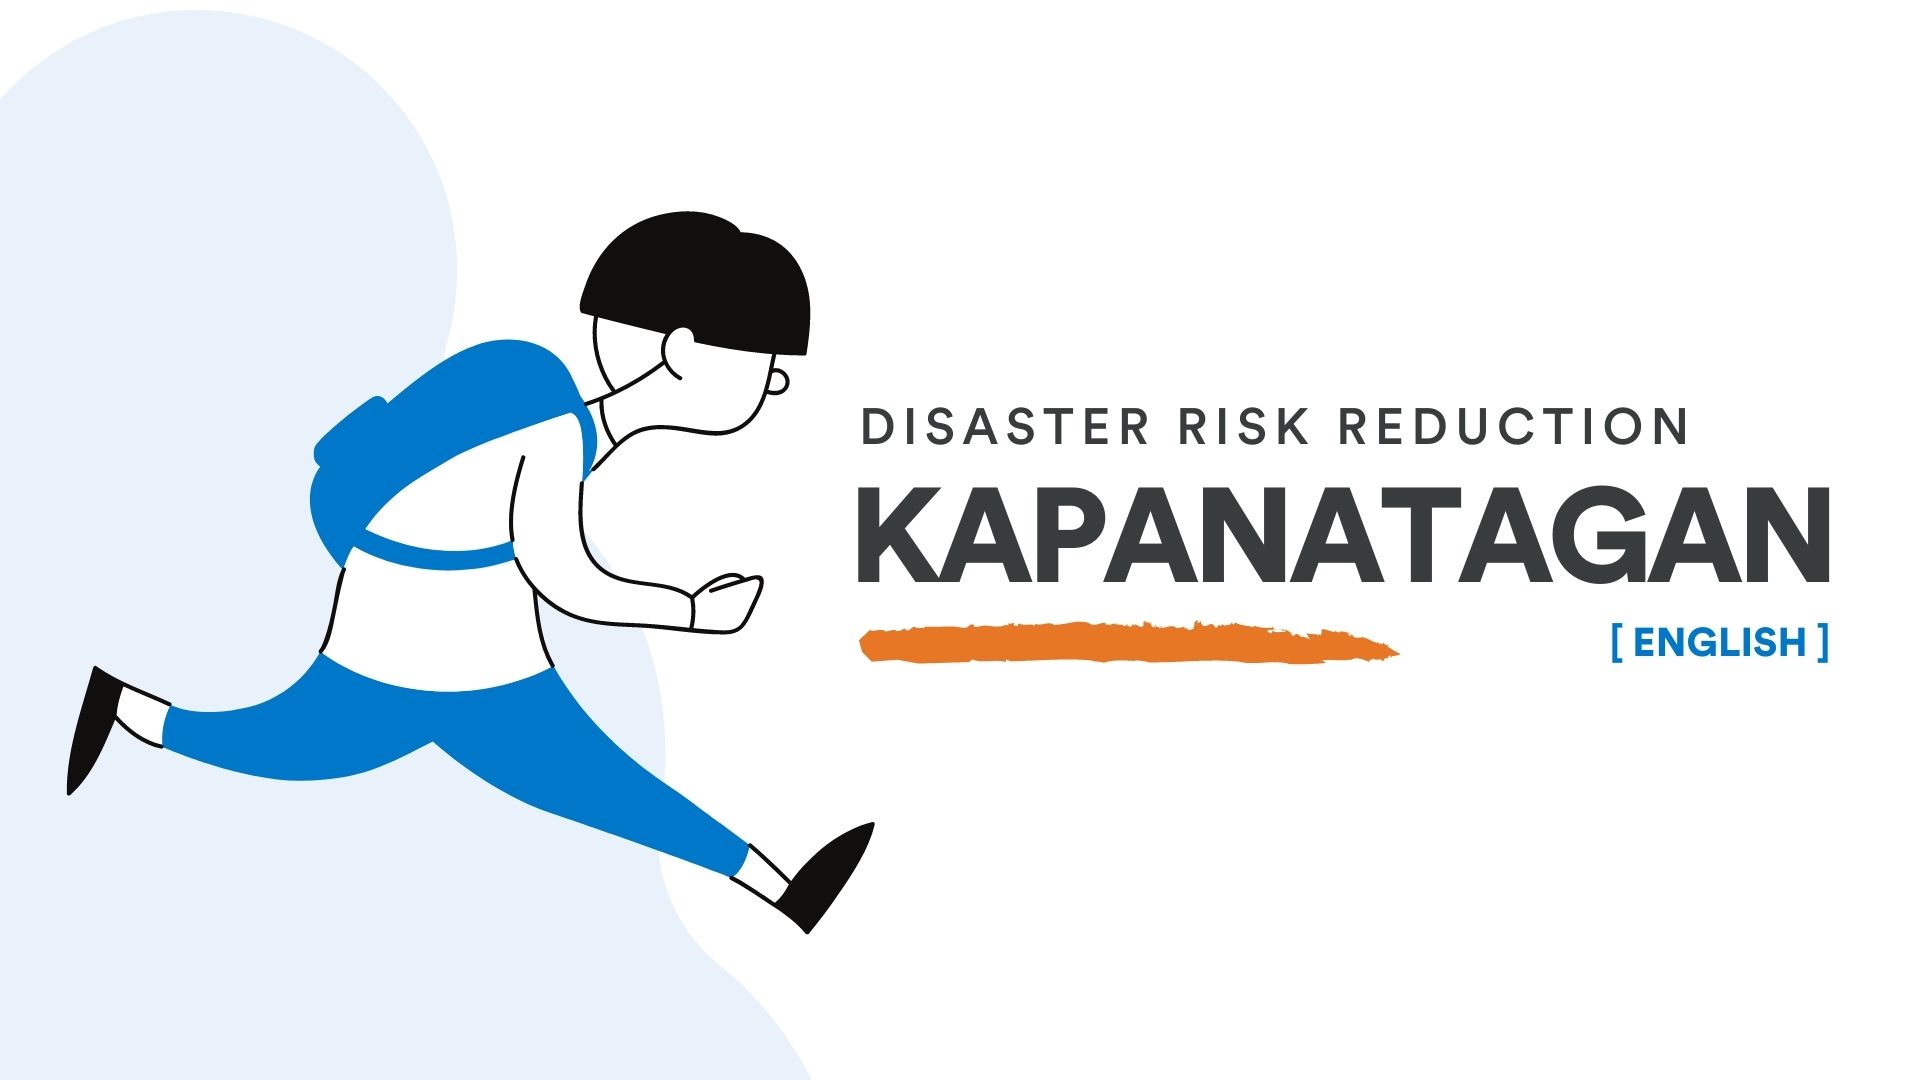 Kapanatagan: Disaster Risk Reduction [English]